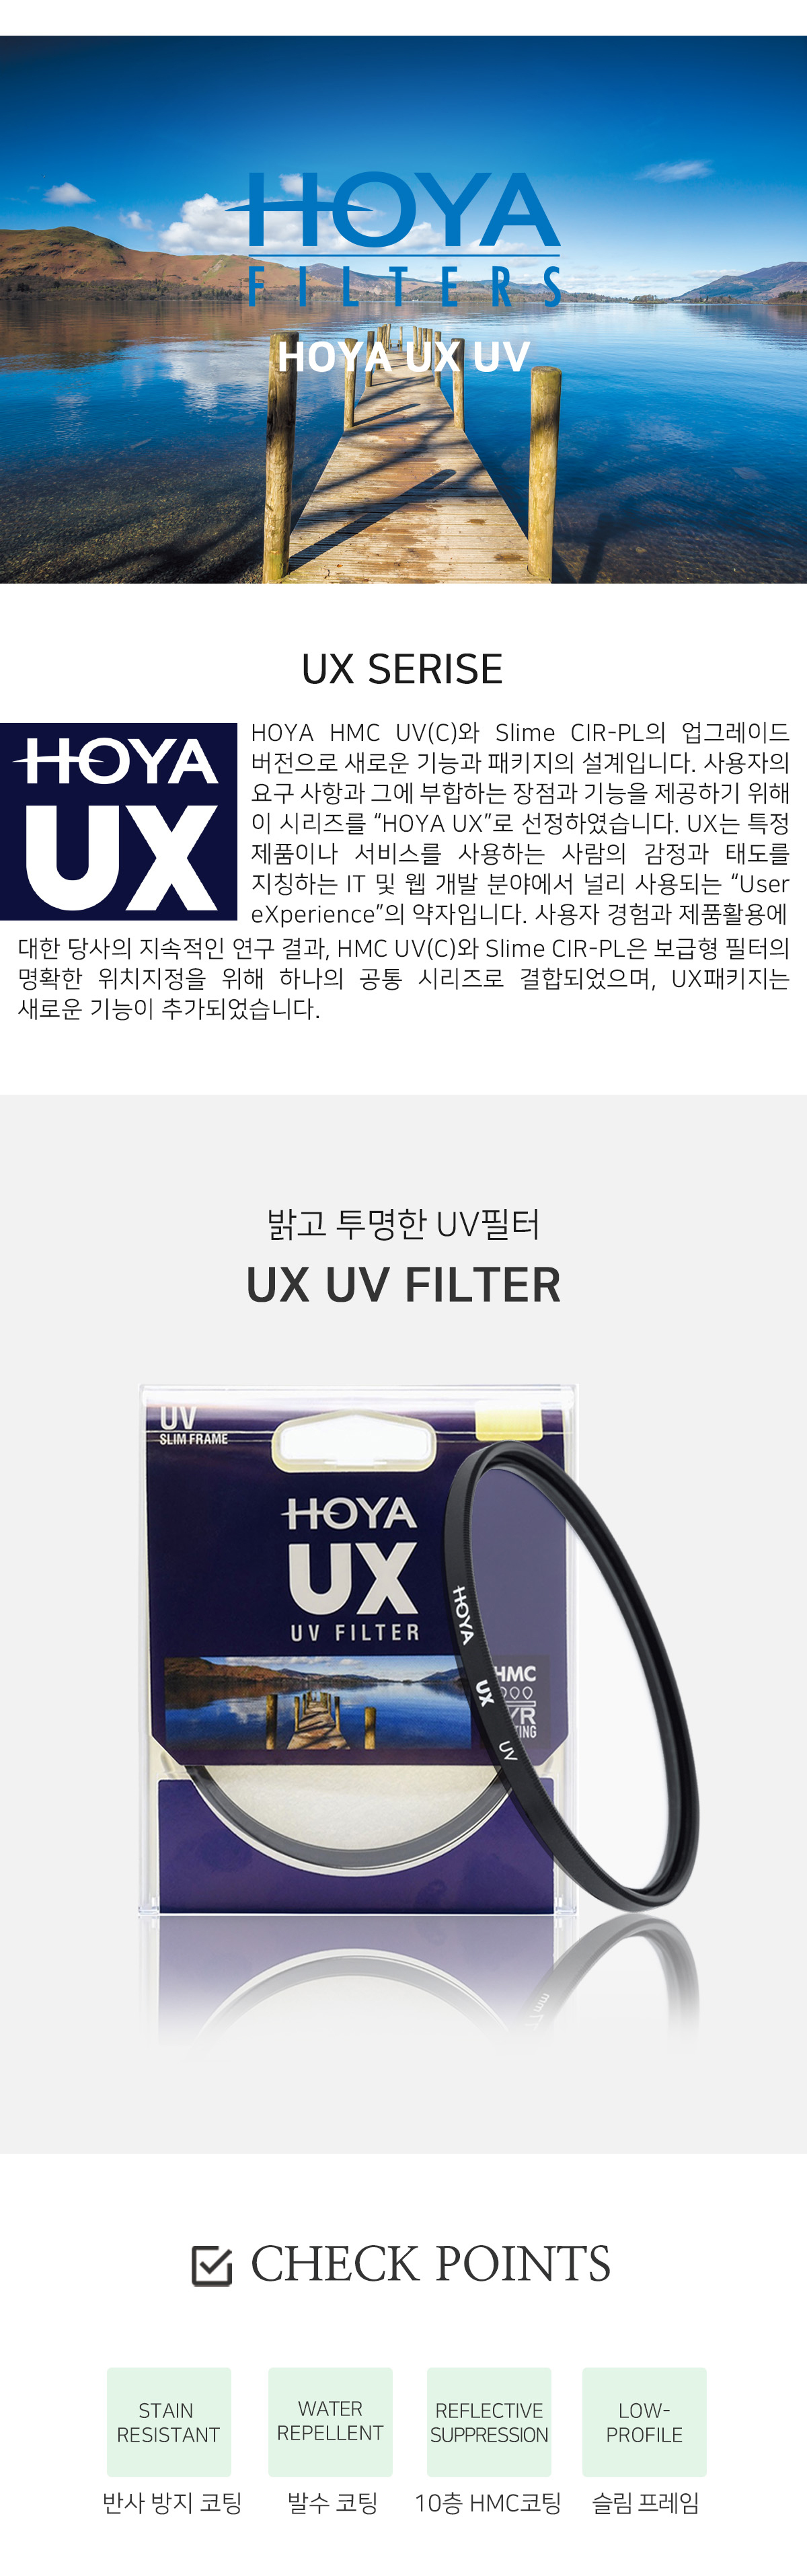 UX_UV_01.jpg